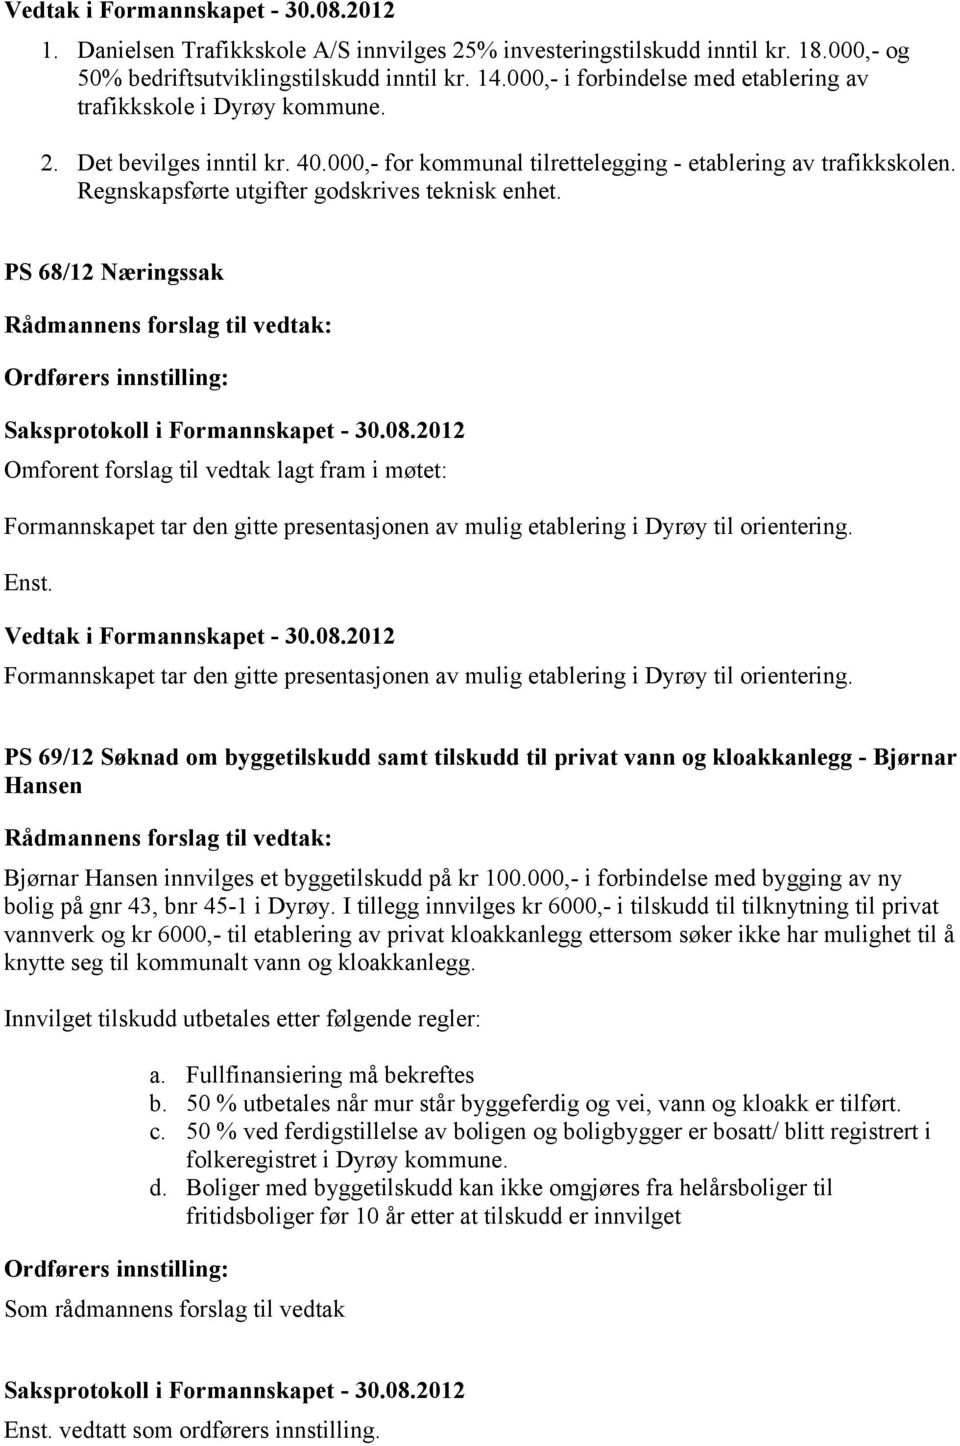 PS 68/12 Næringssak Omforent forslag til vedtak lagt fram i møtet: Formannskapet tar den gitte presentasjonen av mulig etablering i Dyrøy til orientering. Enst.